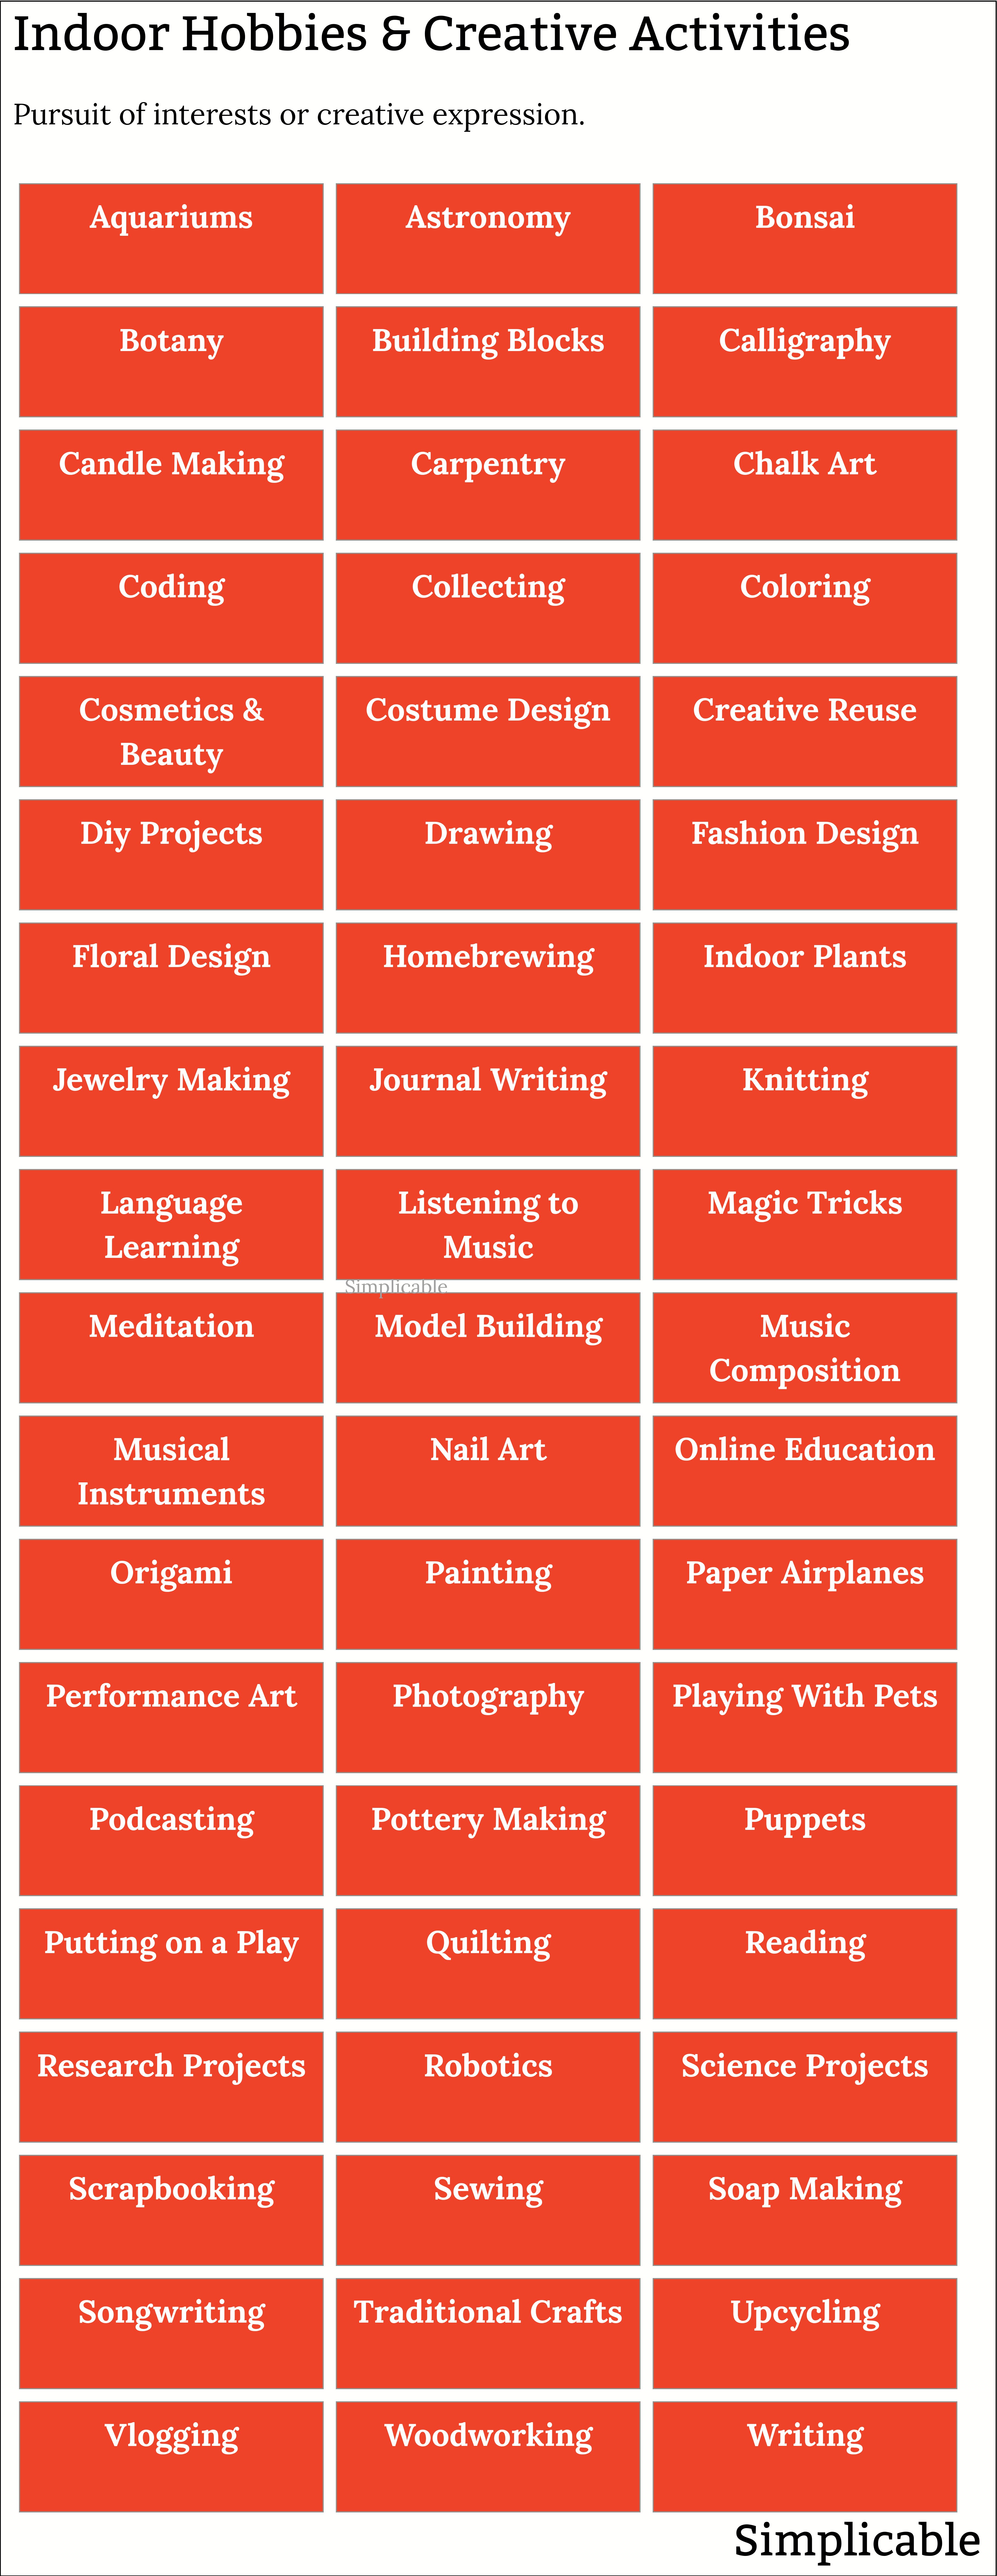 examples of indoor hobbies and creative activities